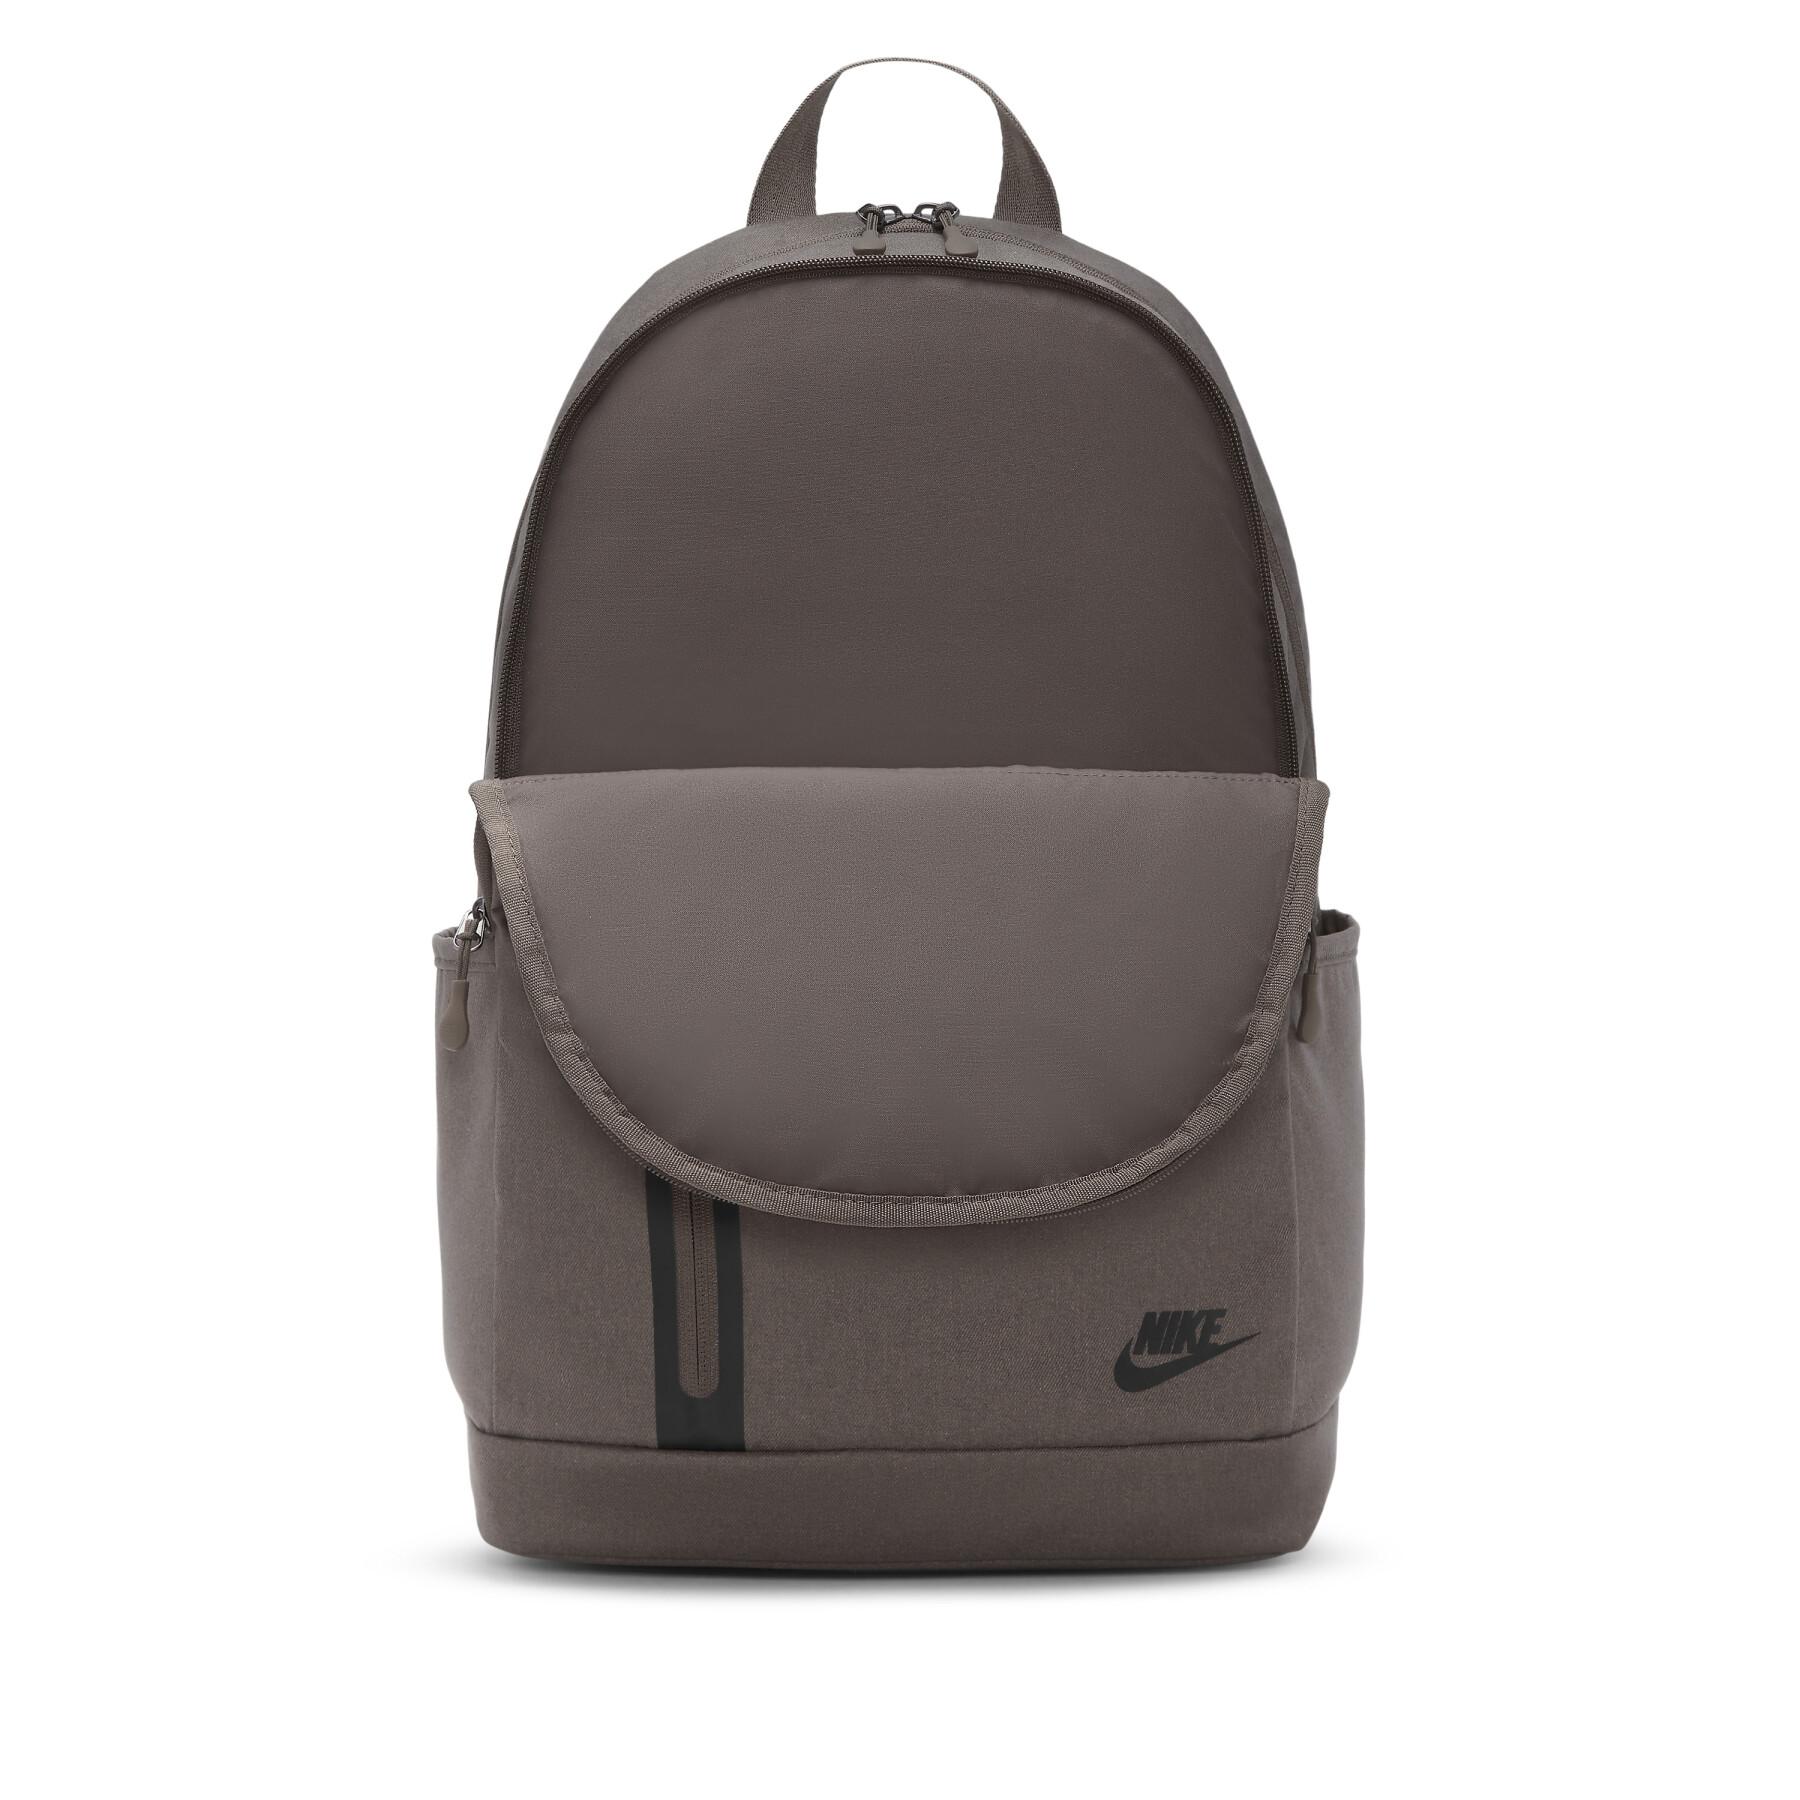 Backpack Nike Elemental Premium